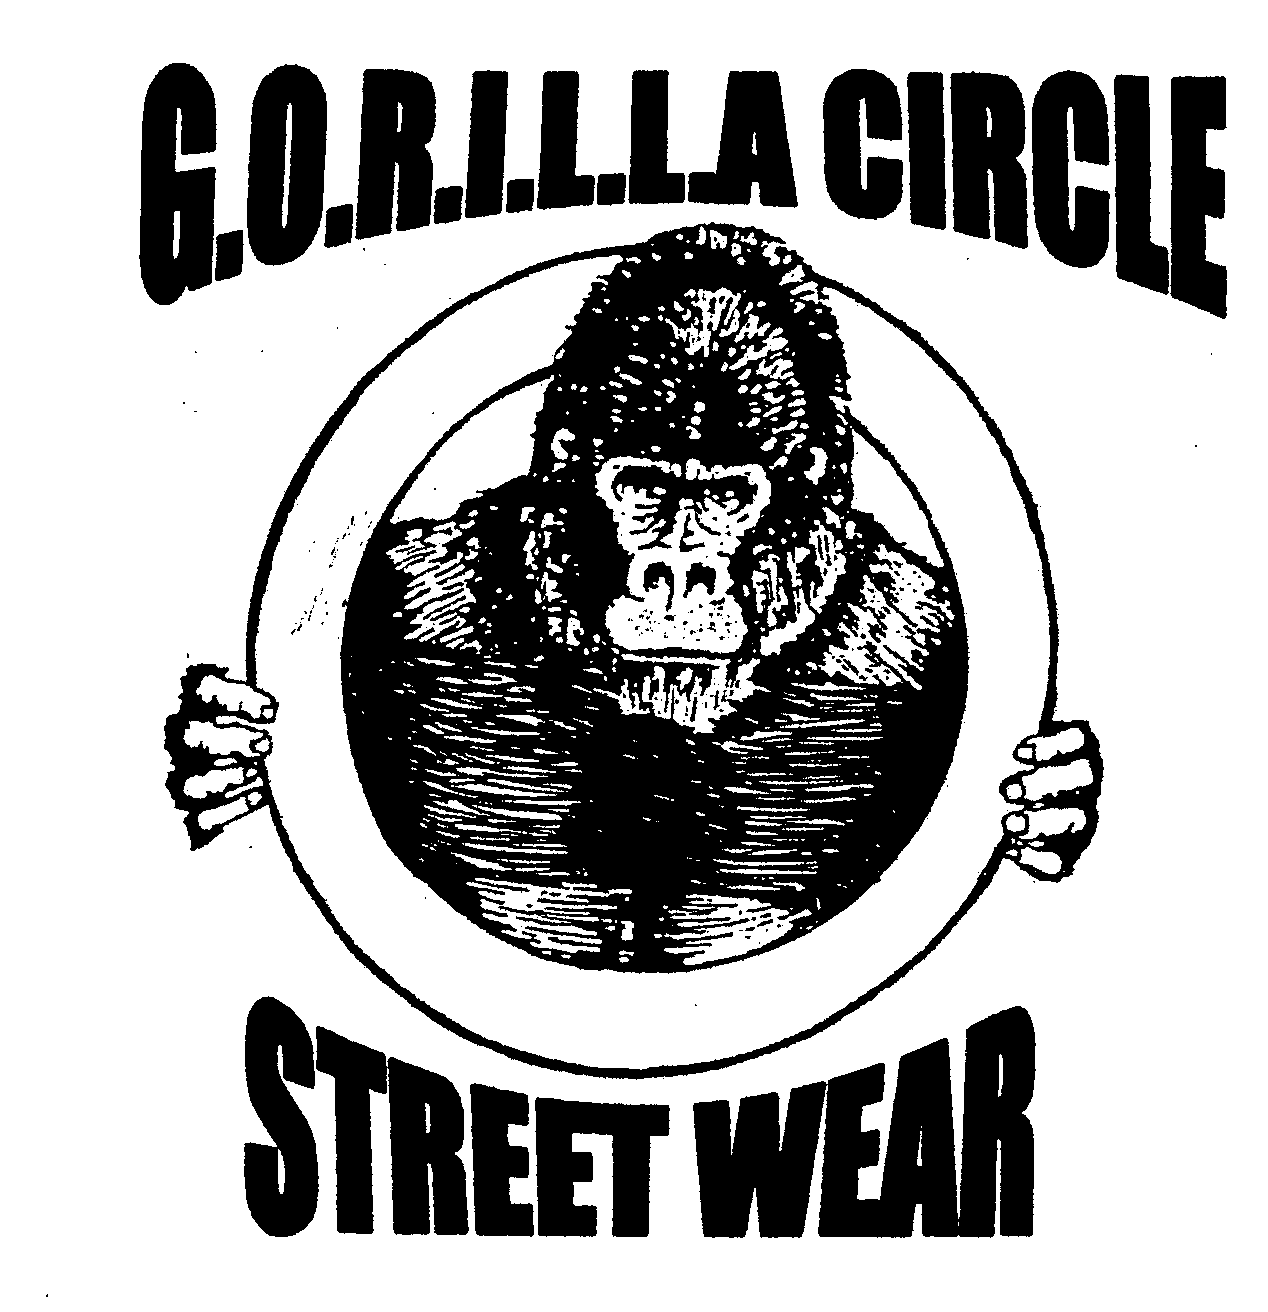  G.O.R.I.L.L.A CIRCLE STREET WEAR